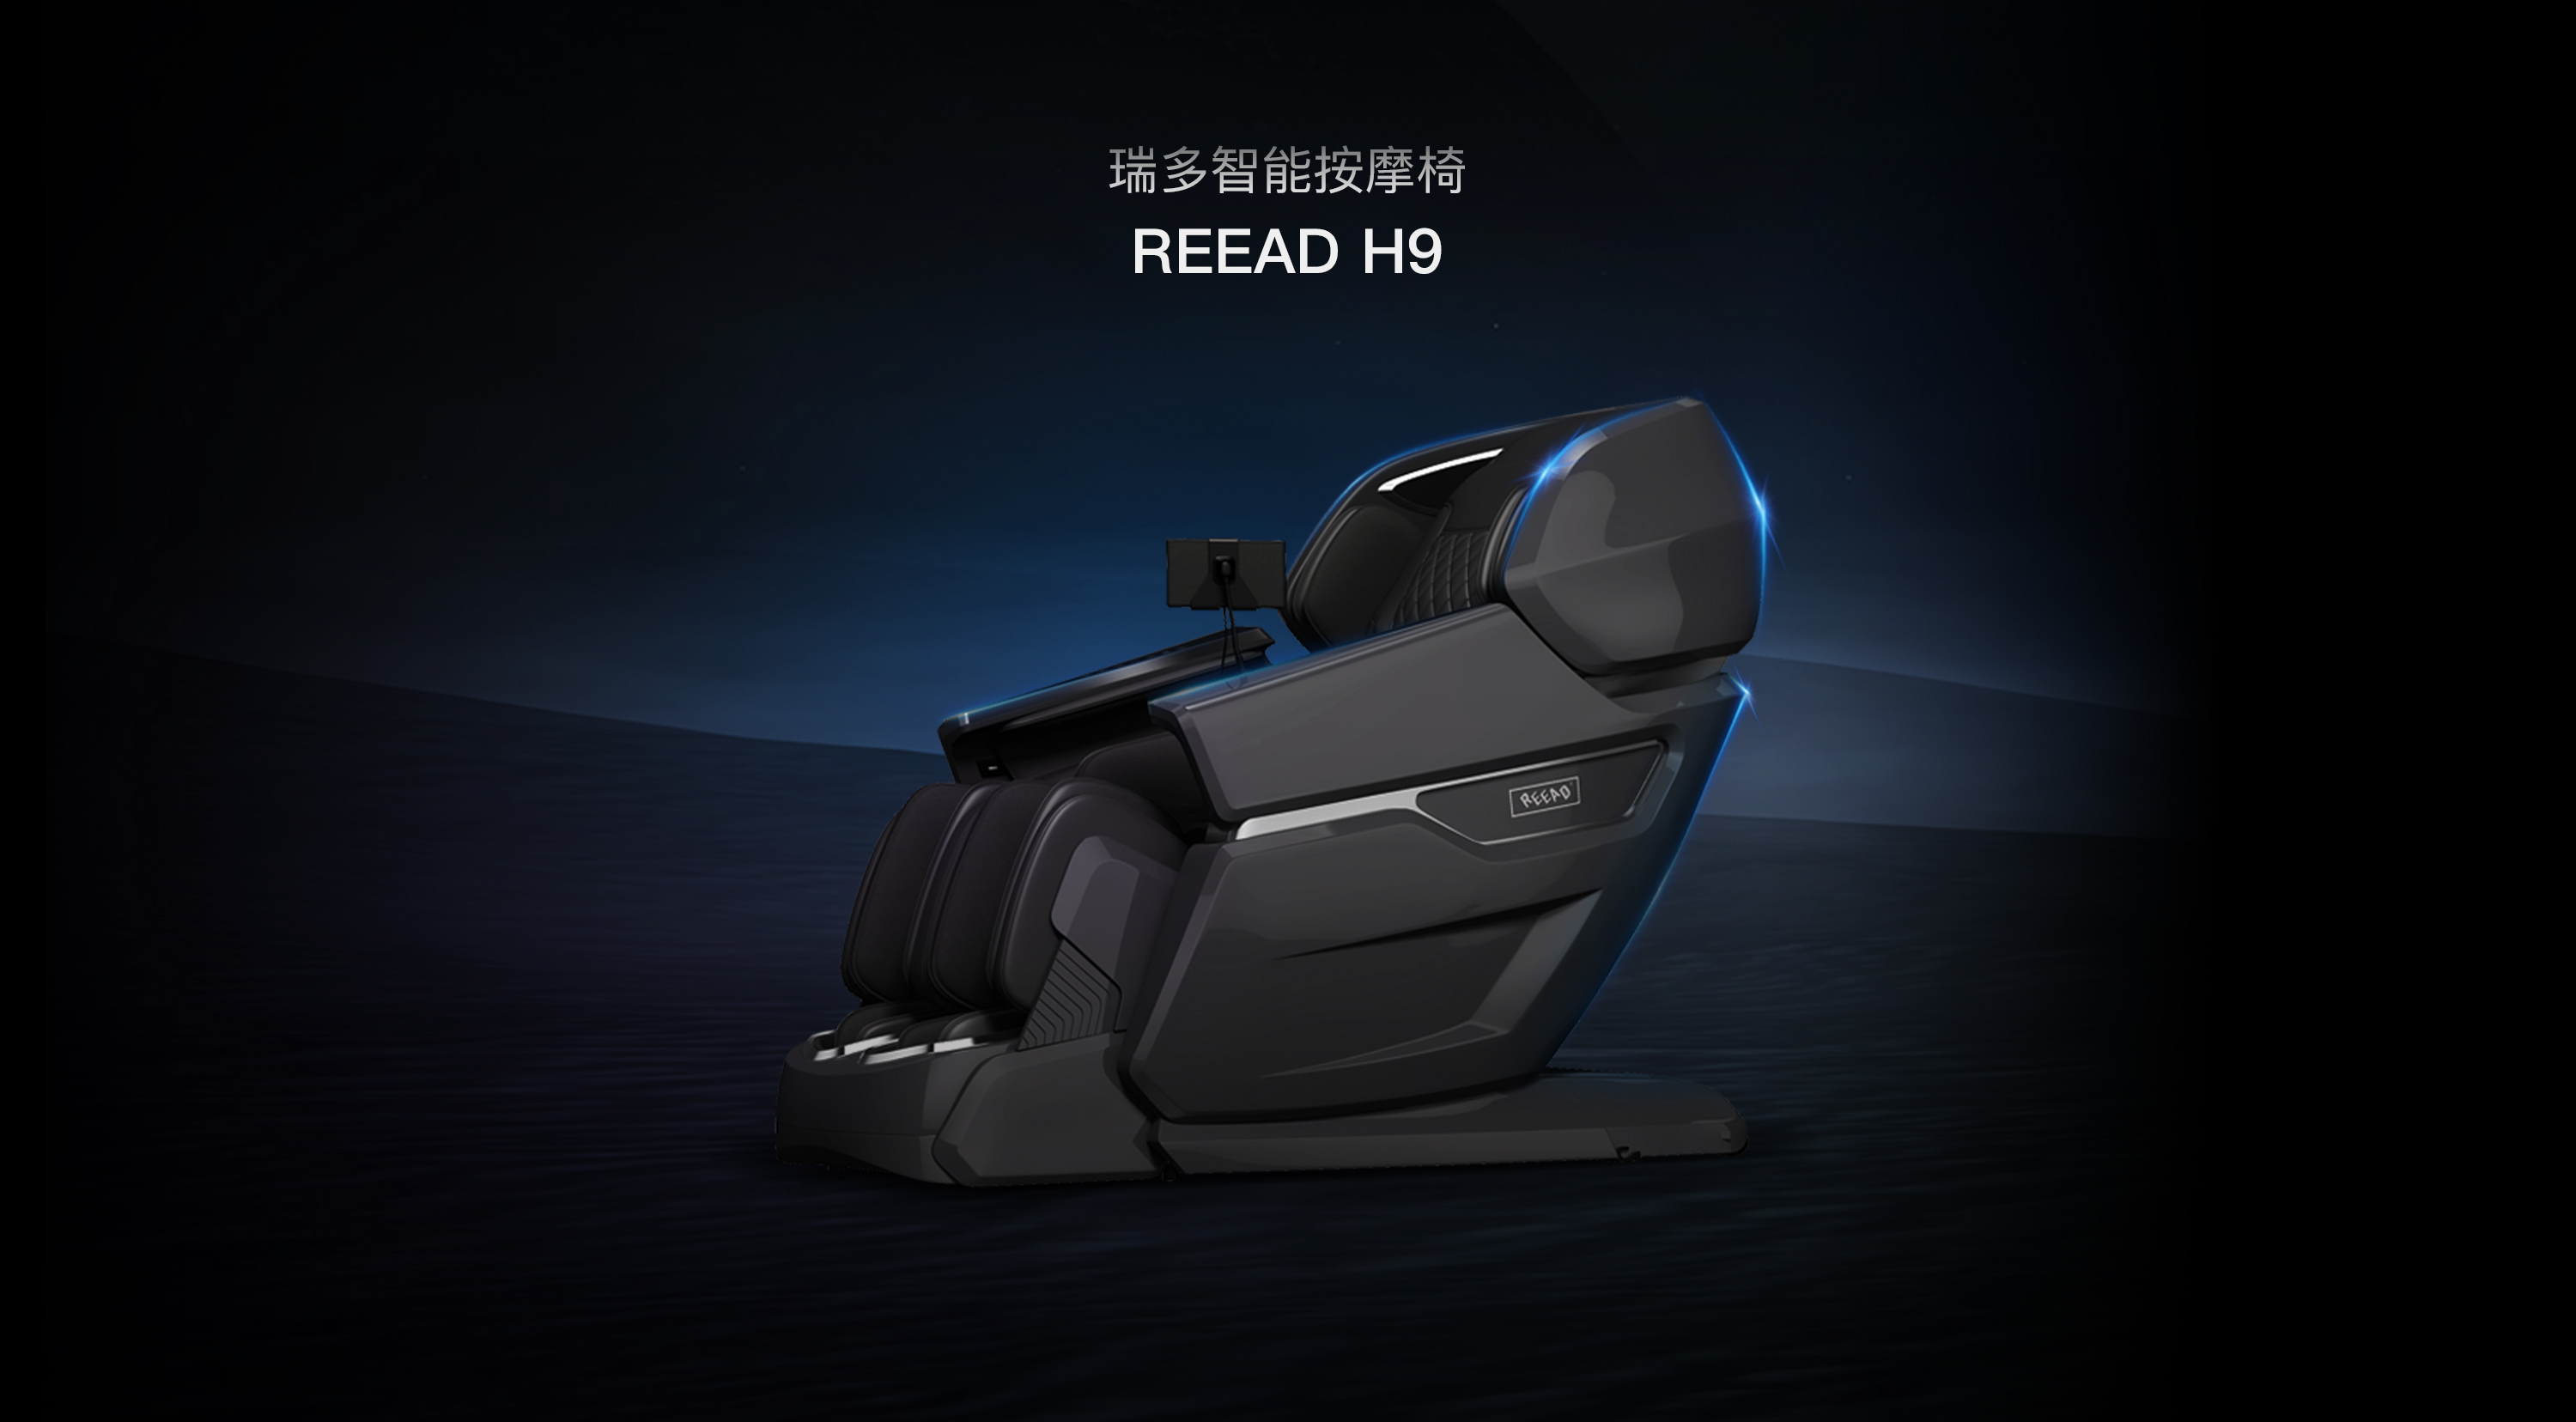 REEAD智能按摩椅REEAD H9,REEAD智能按摩椅,瑞多智能按摩椅,REEADHome按摩椅概述